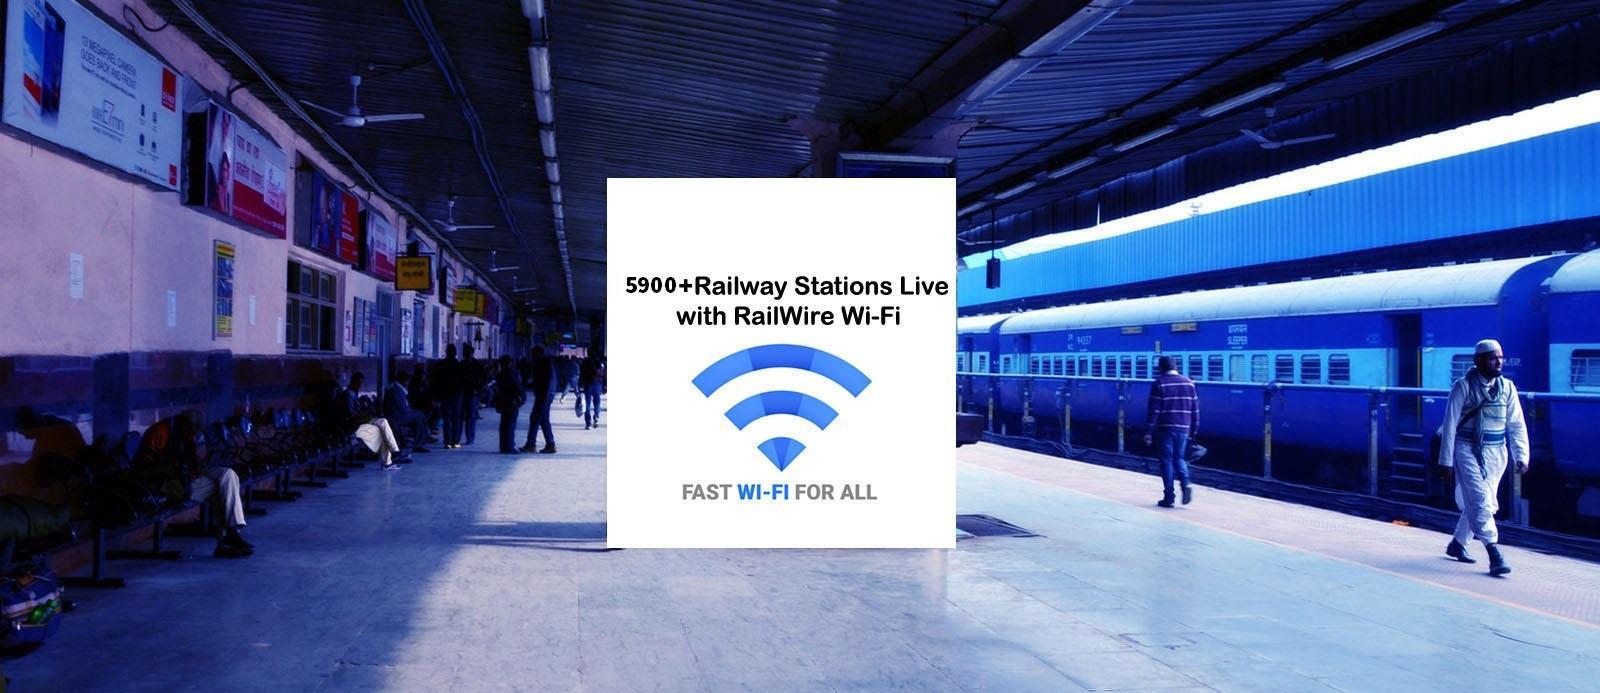 RailTel भारत में 4000 रेलवे स्टेशनों पर प्रीपेड वाई-फाई सेवाओं का परिचय देता है